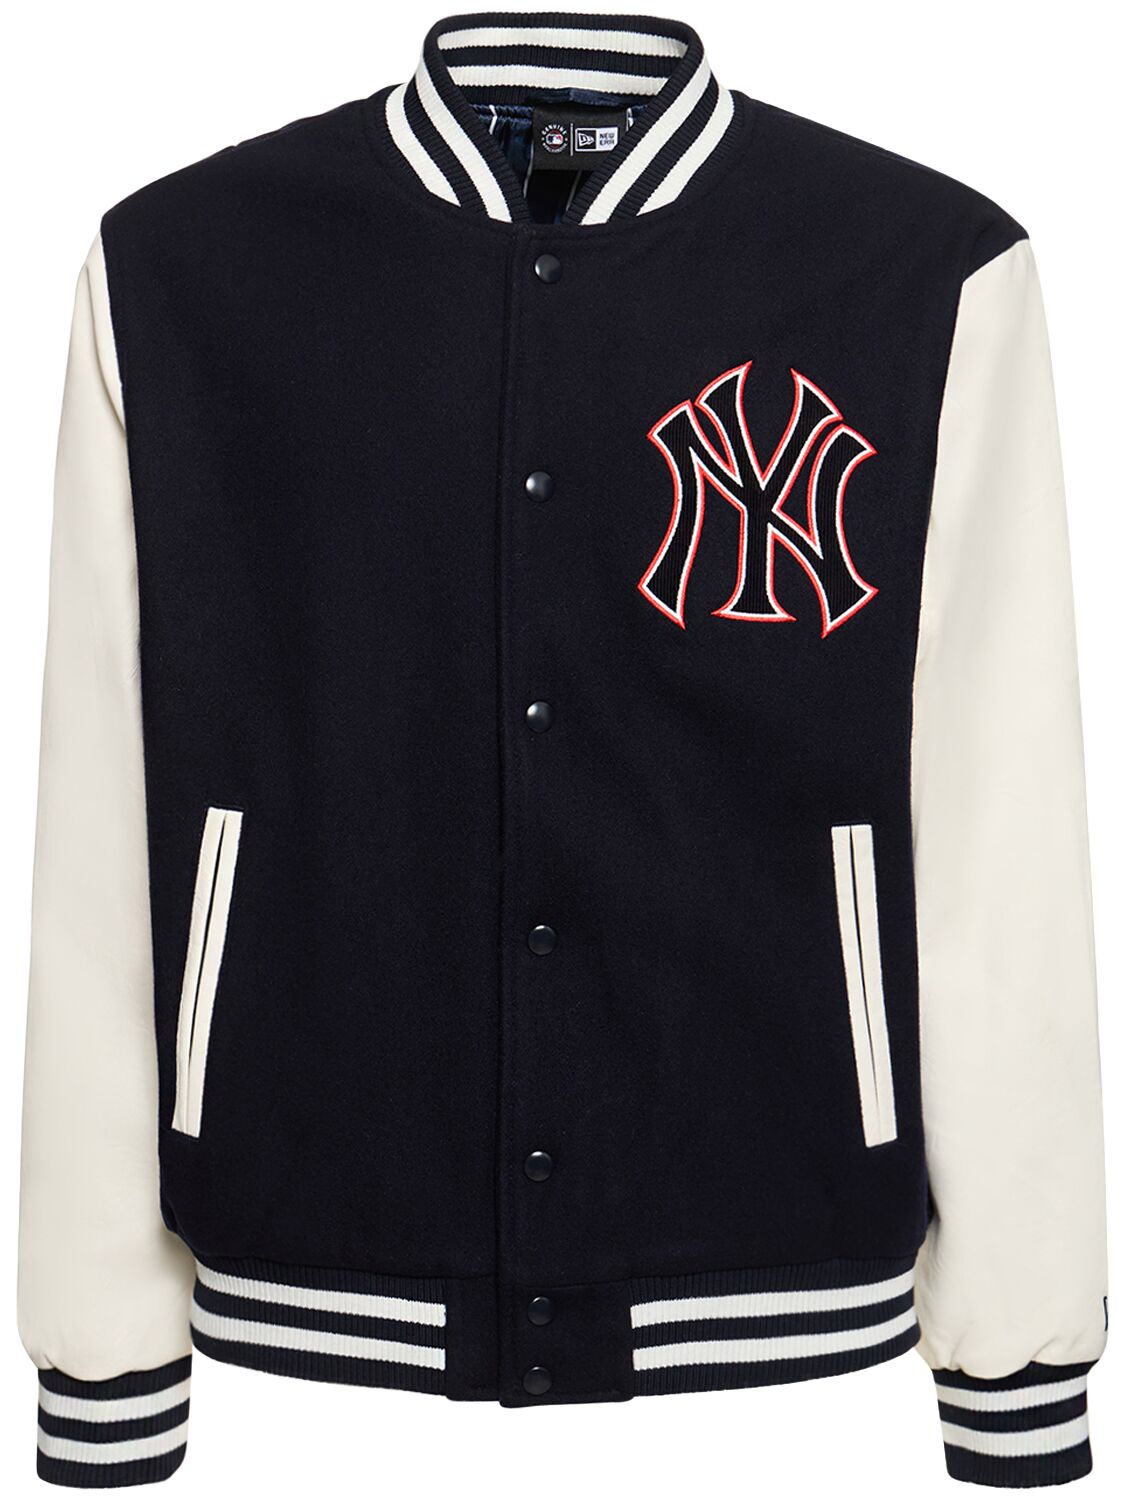 Image of Mlb Lifestyle Ny Yankees Varsity Jacket